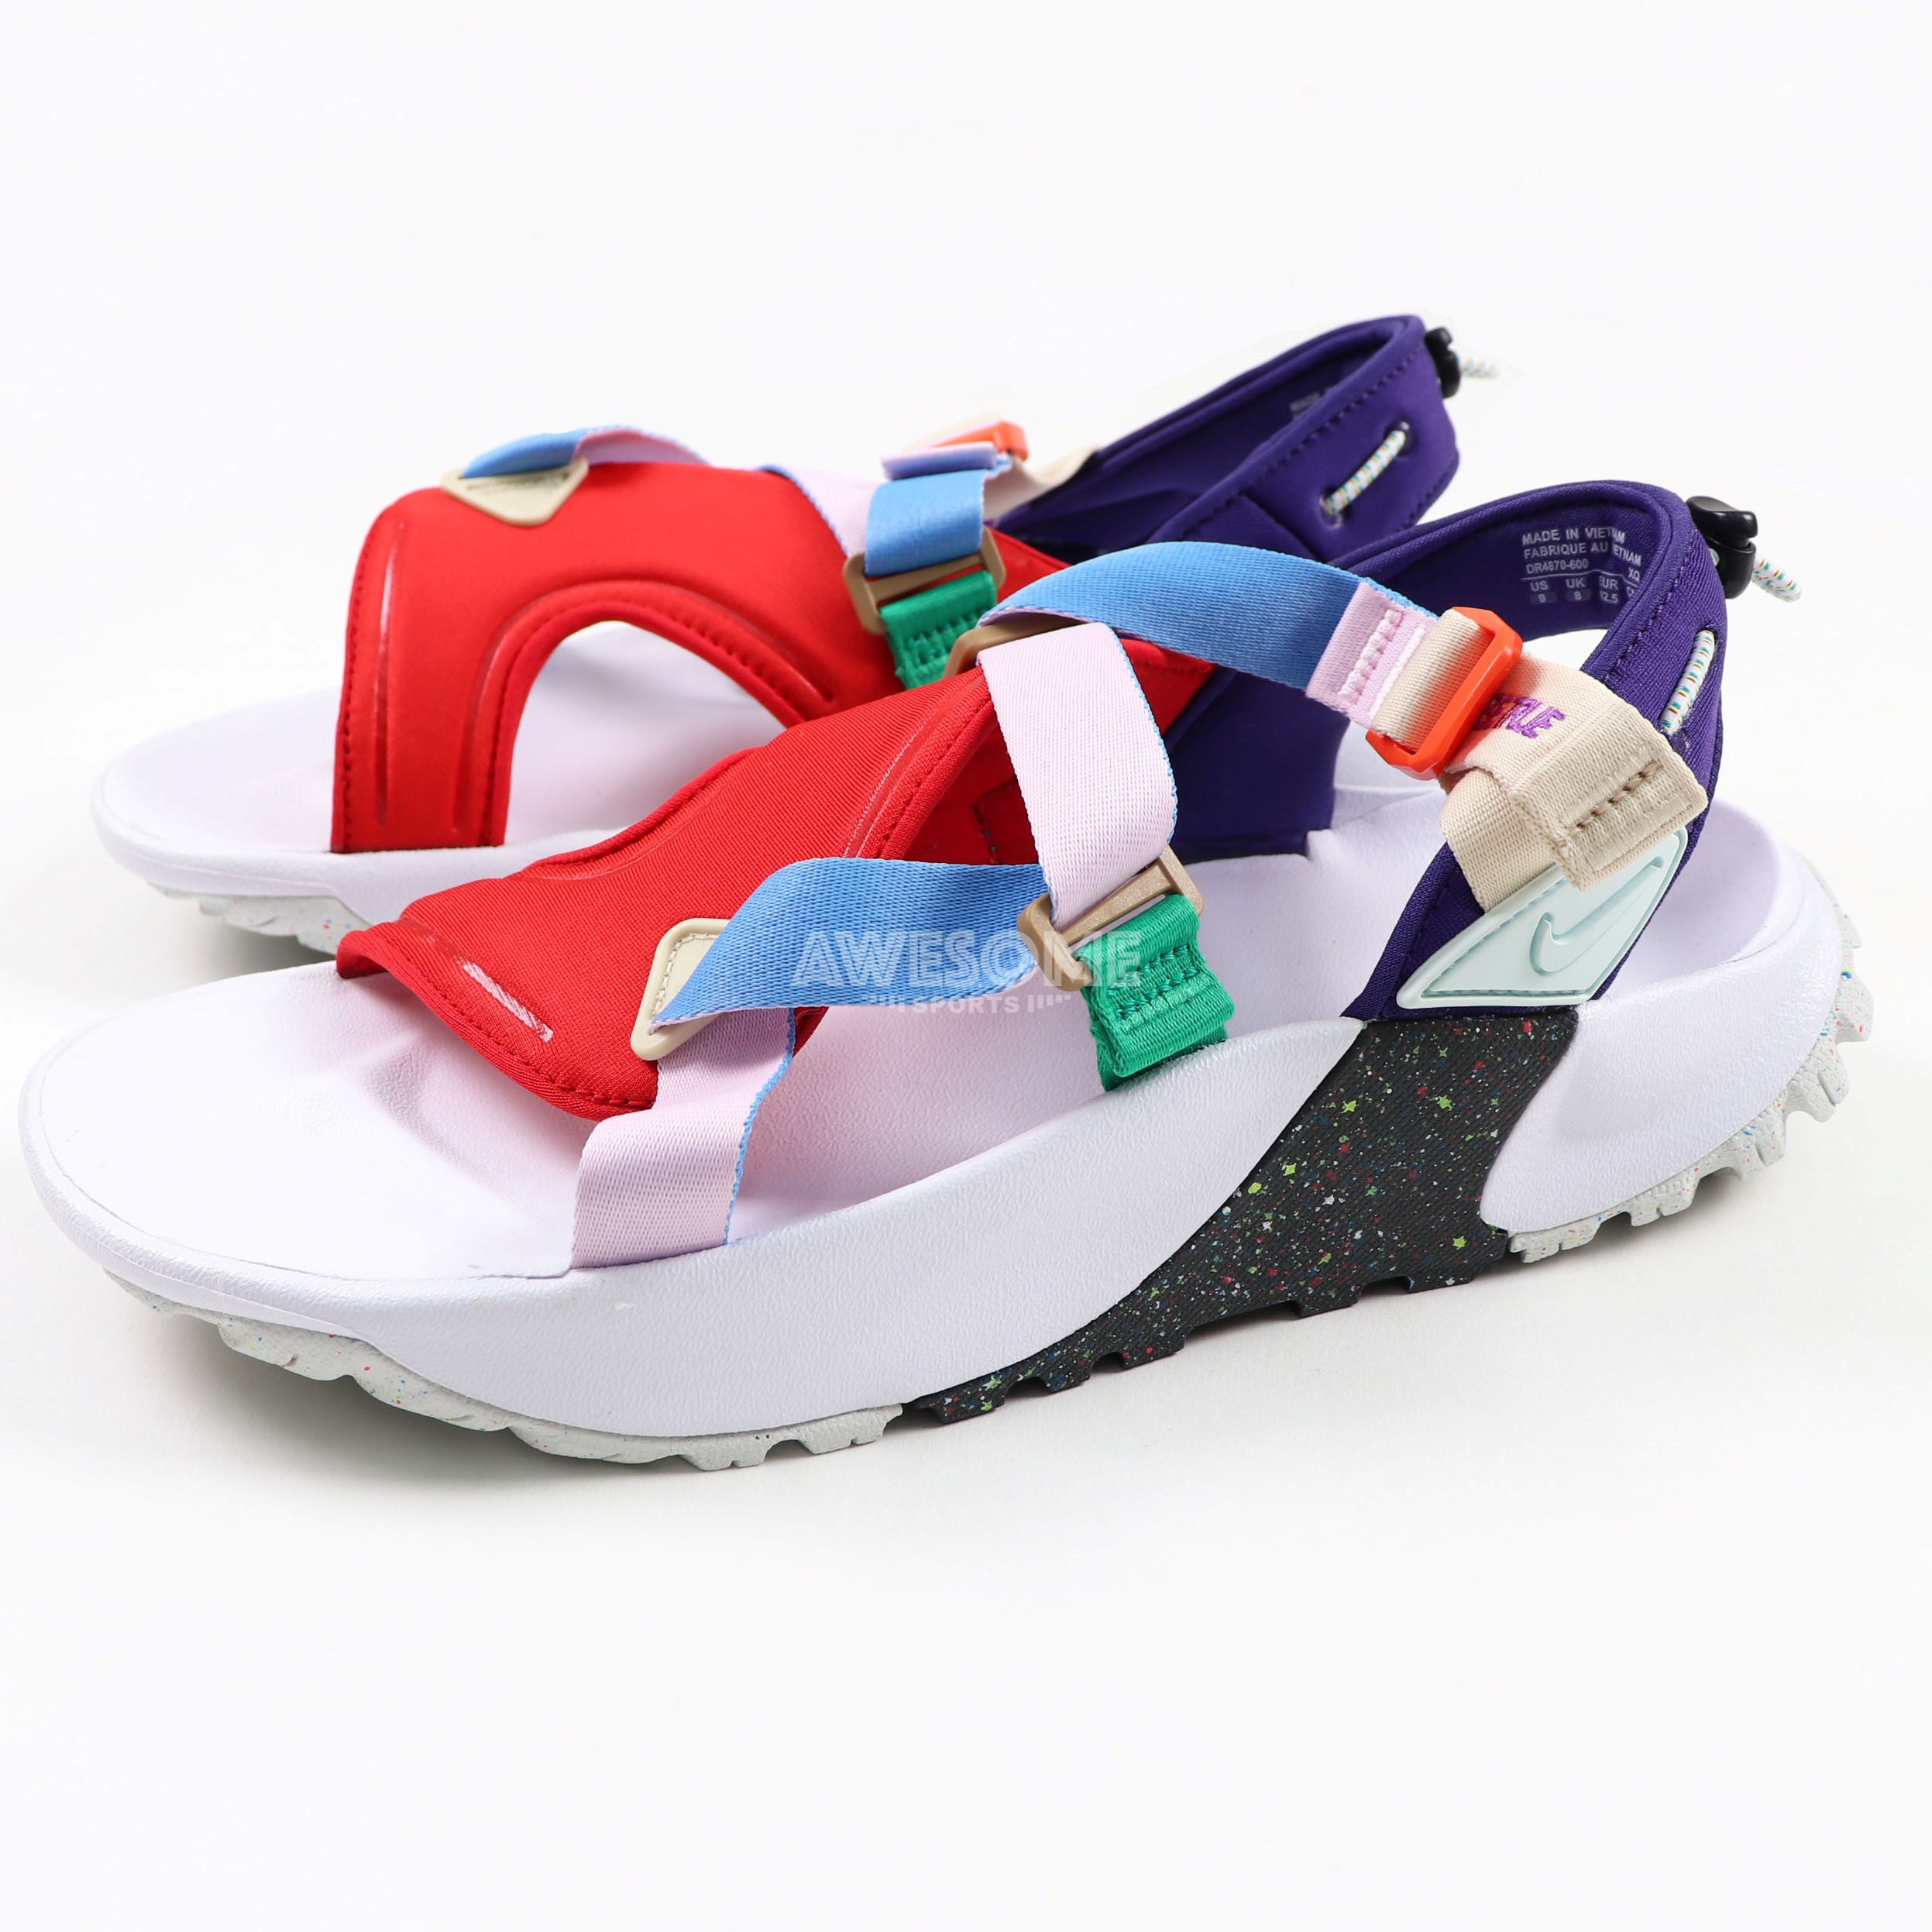 [歐鉉]NIKE ONEONTA BETRUE 白紅紫 涼鞋 拖鞋 休閒鞋 男女鞋 DR4870-600